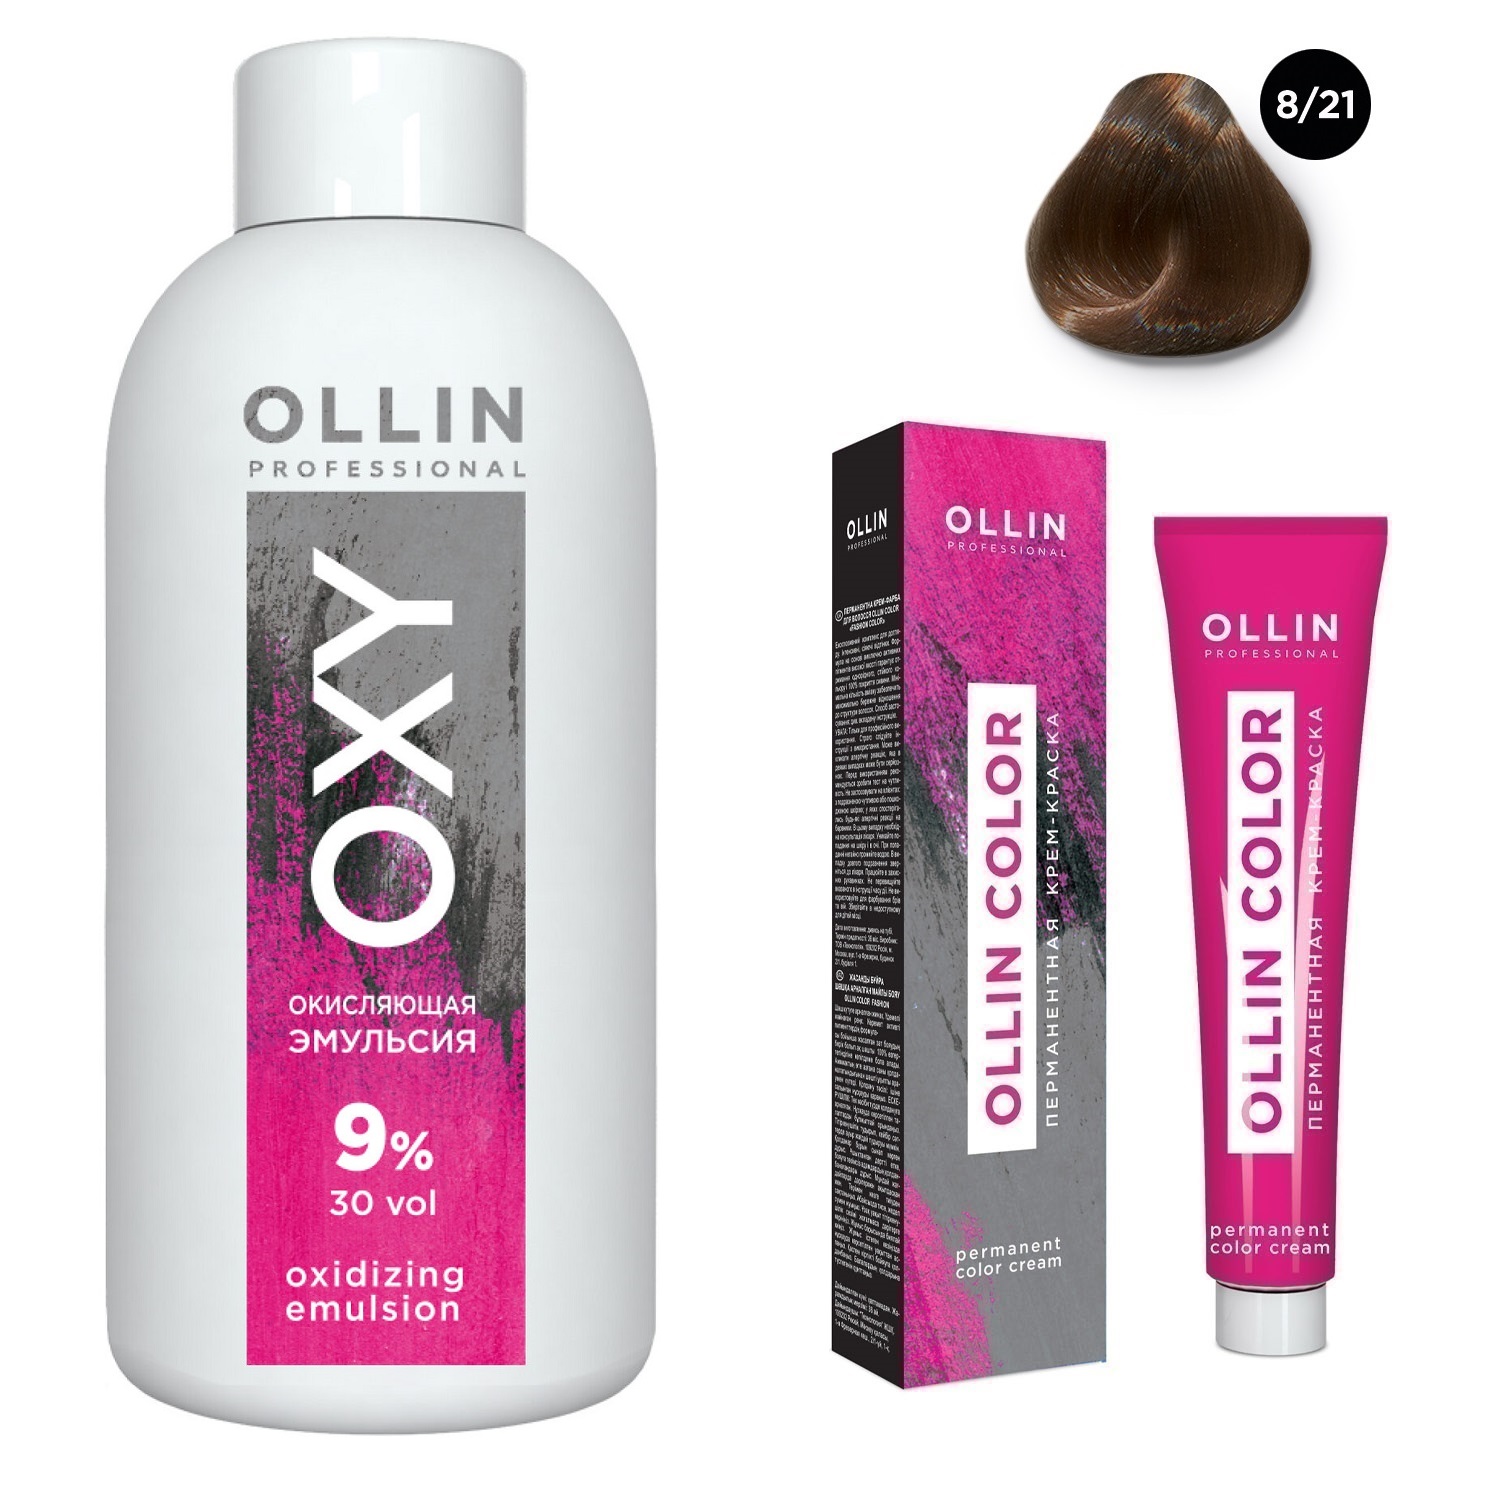 Ollin Professional Набор Перманентная крем-краска для волос Ollin Color оттенок 8/21 светло-русый фиолетово-пепельный 100 мл + Окисляющая эмульсия Oxy 9% 150 мл (Ollin Professional, Ollin Color)